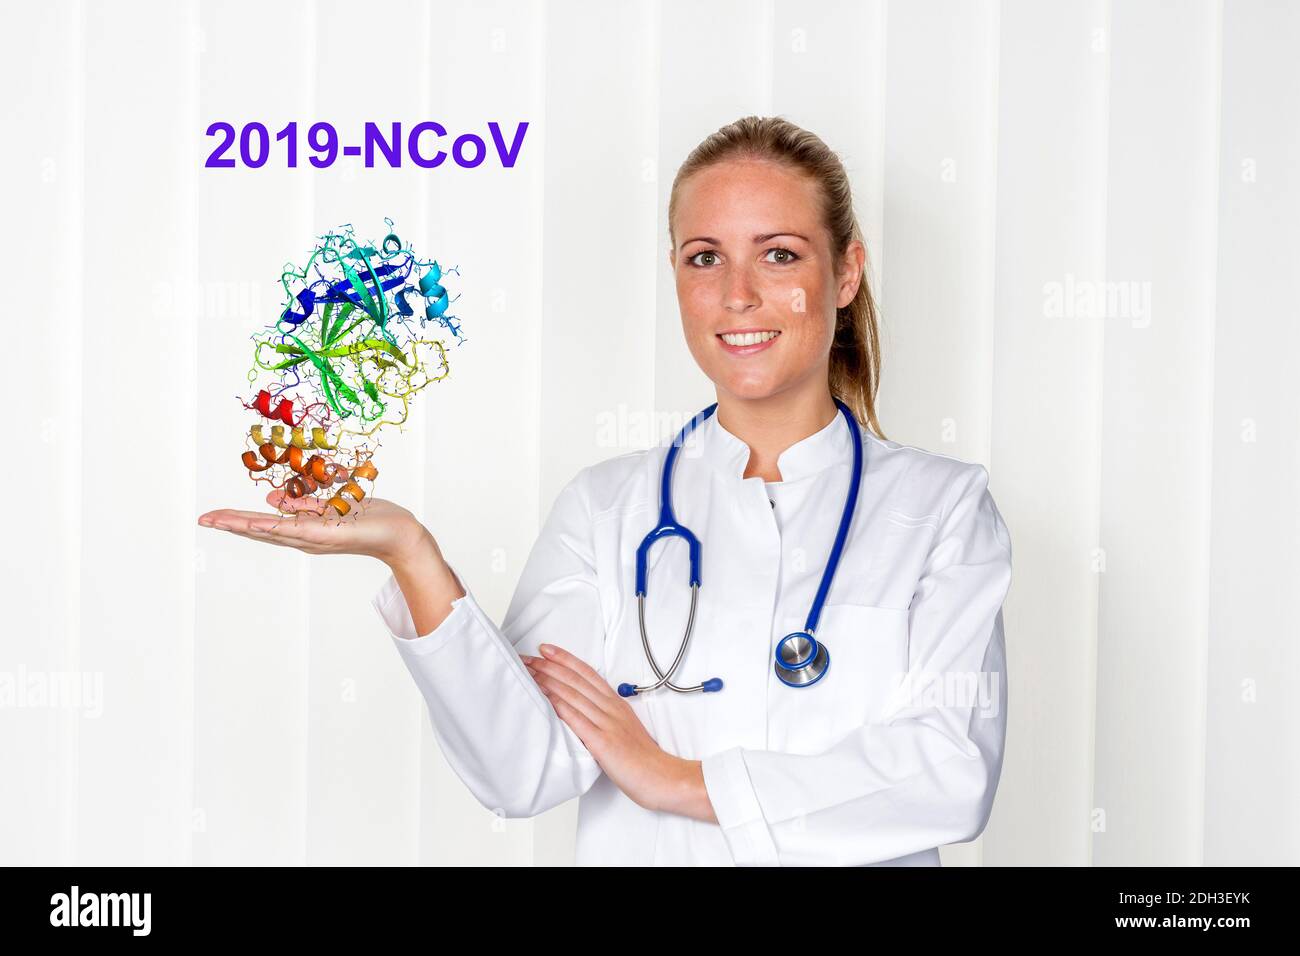 Eie Ärztin hält symbolisch das Coronavirus in der Hand, 2019-nCoV, Stock Photo